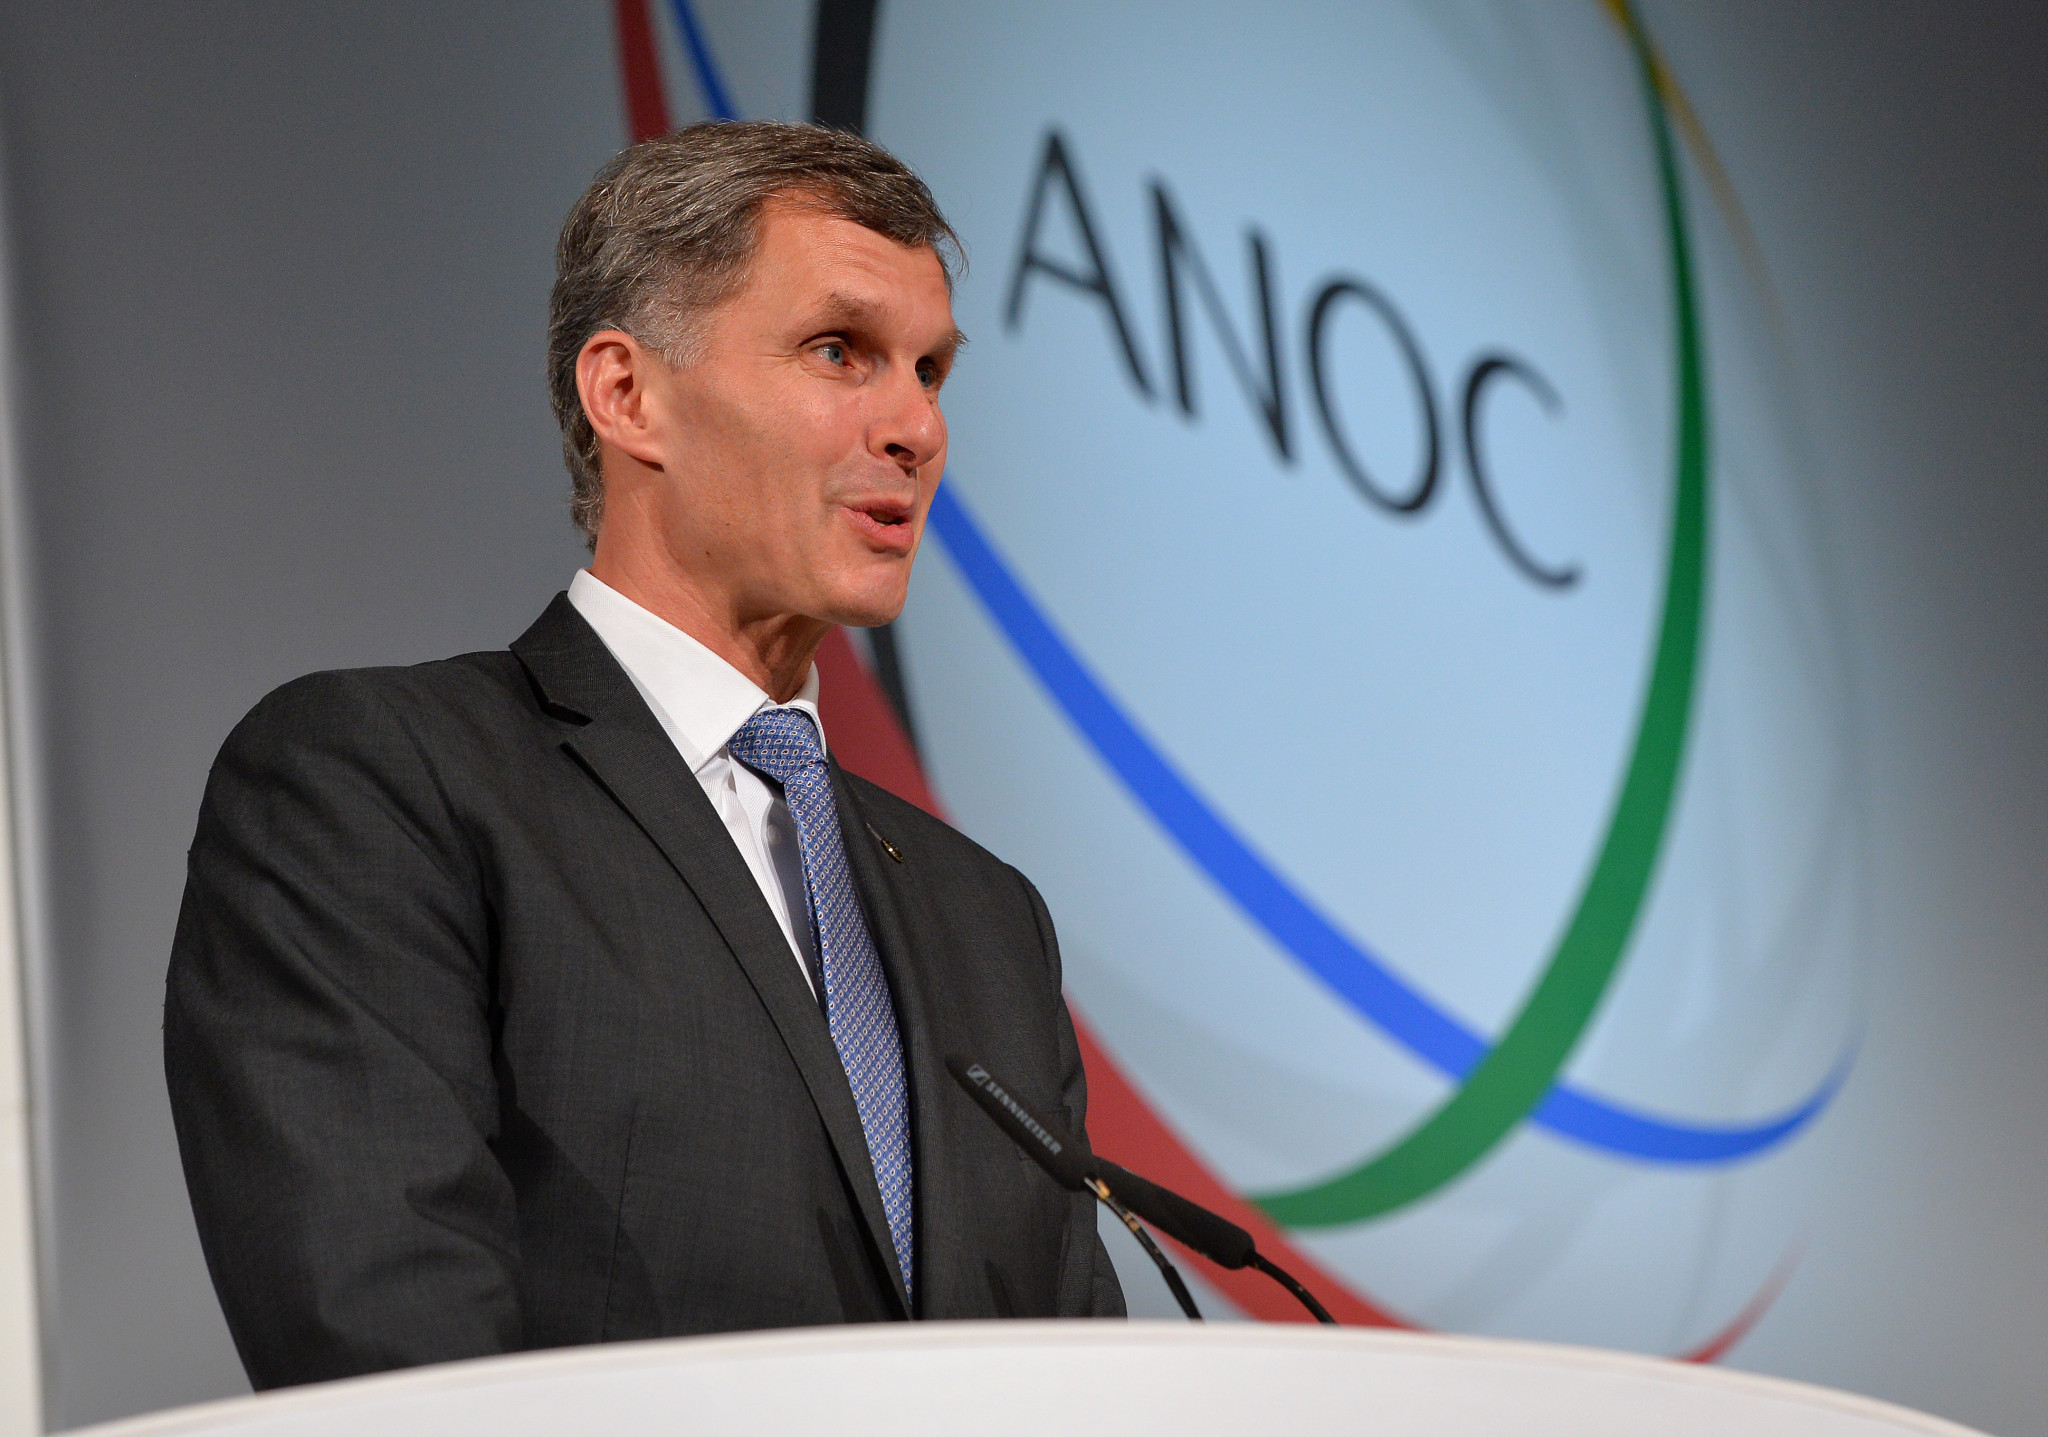 Jiří Kejval has been Czech Olympic Committee President since 2012 ©ANOC